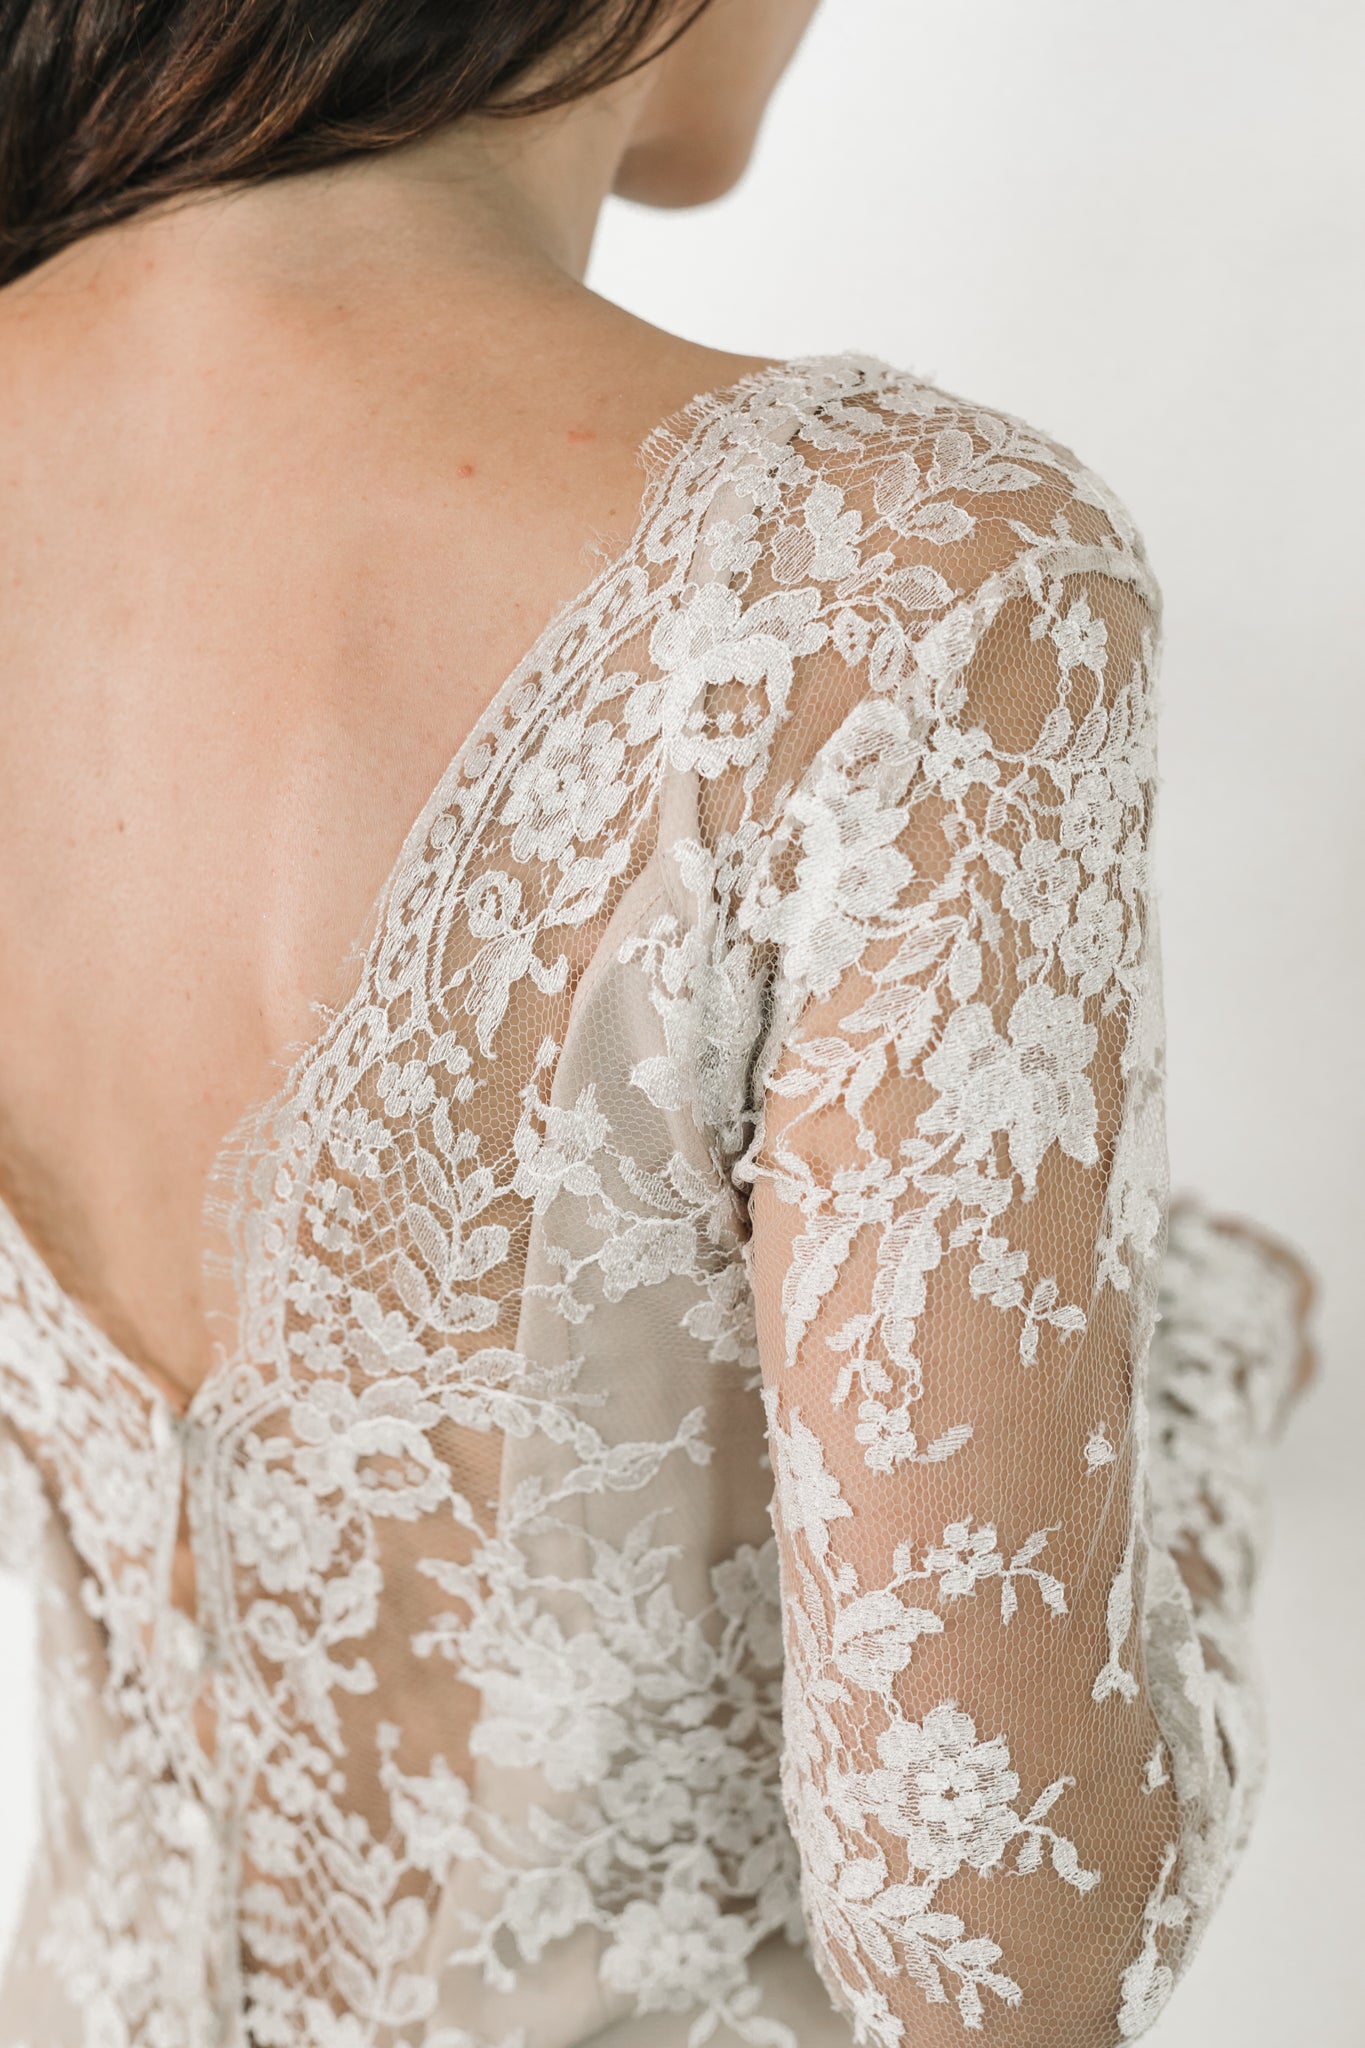 Elizabeth Grace Couture "Antoinette" Lace Wedding Dress